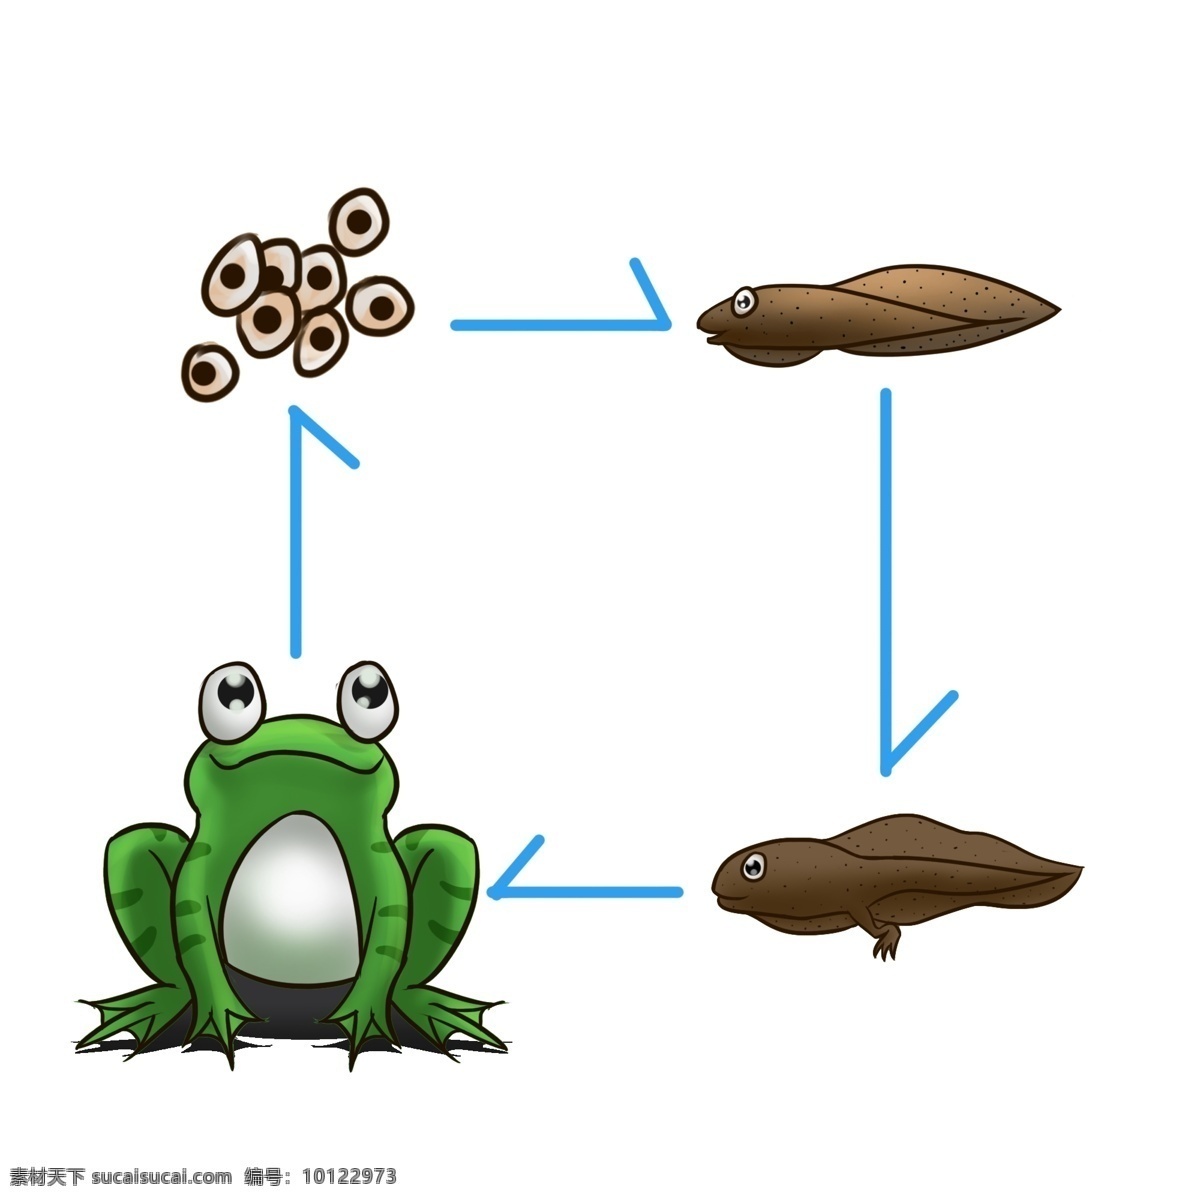 青蛙 两栖动物 生长 过程 生物 动物 两栖 蝌蚪 青蛙卵